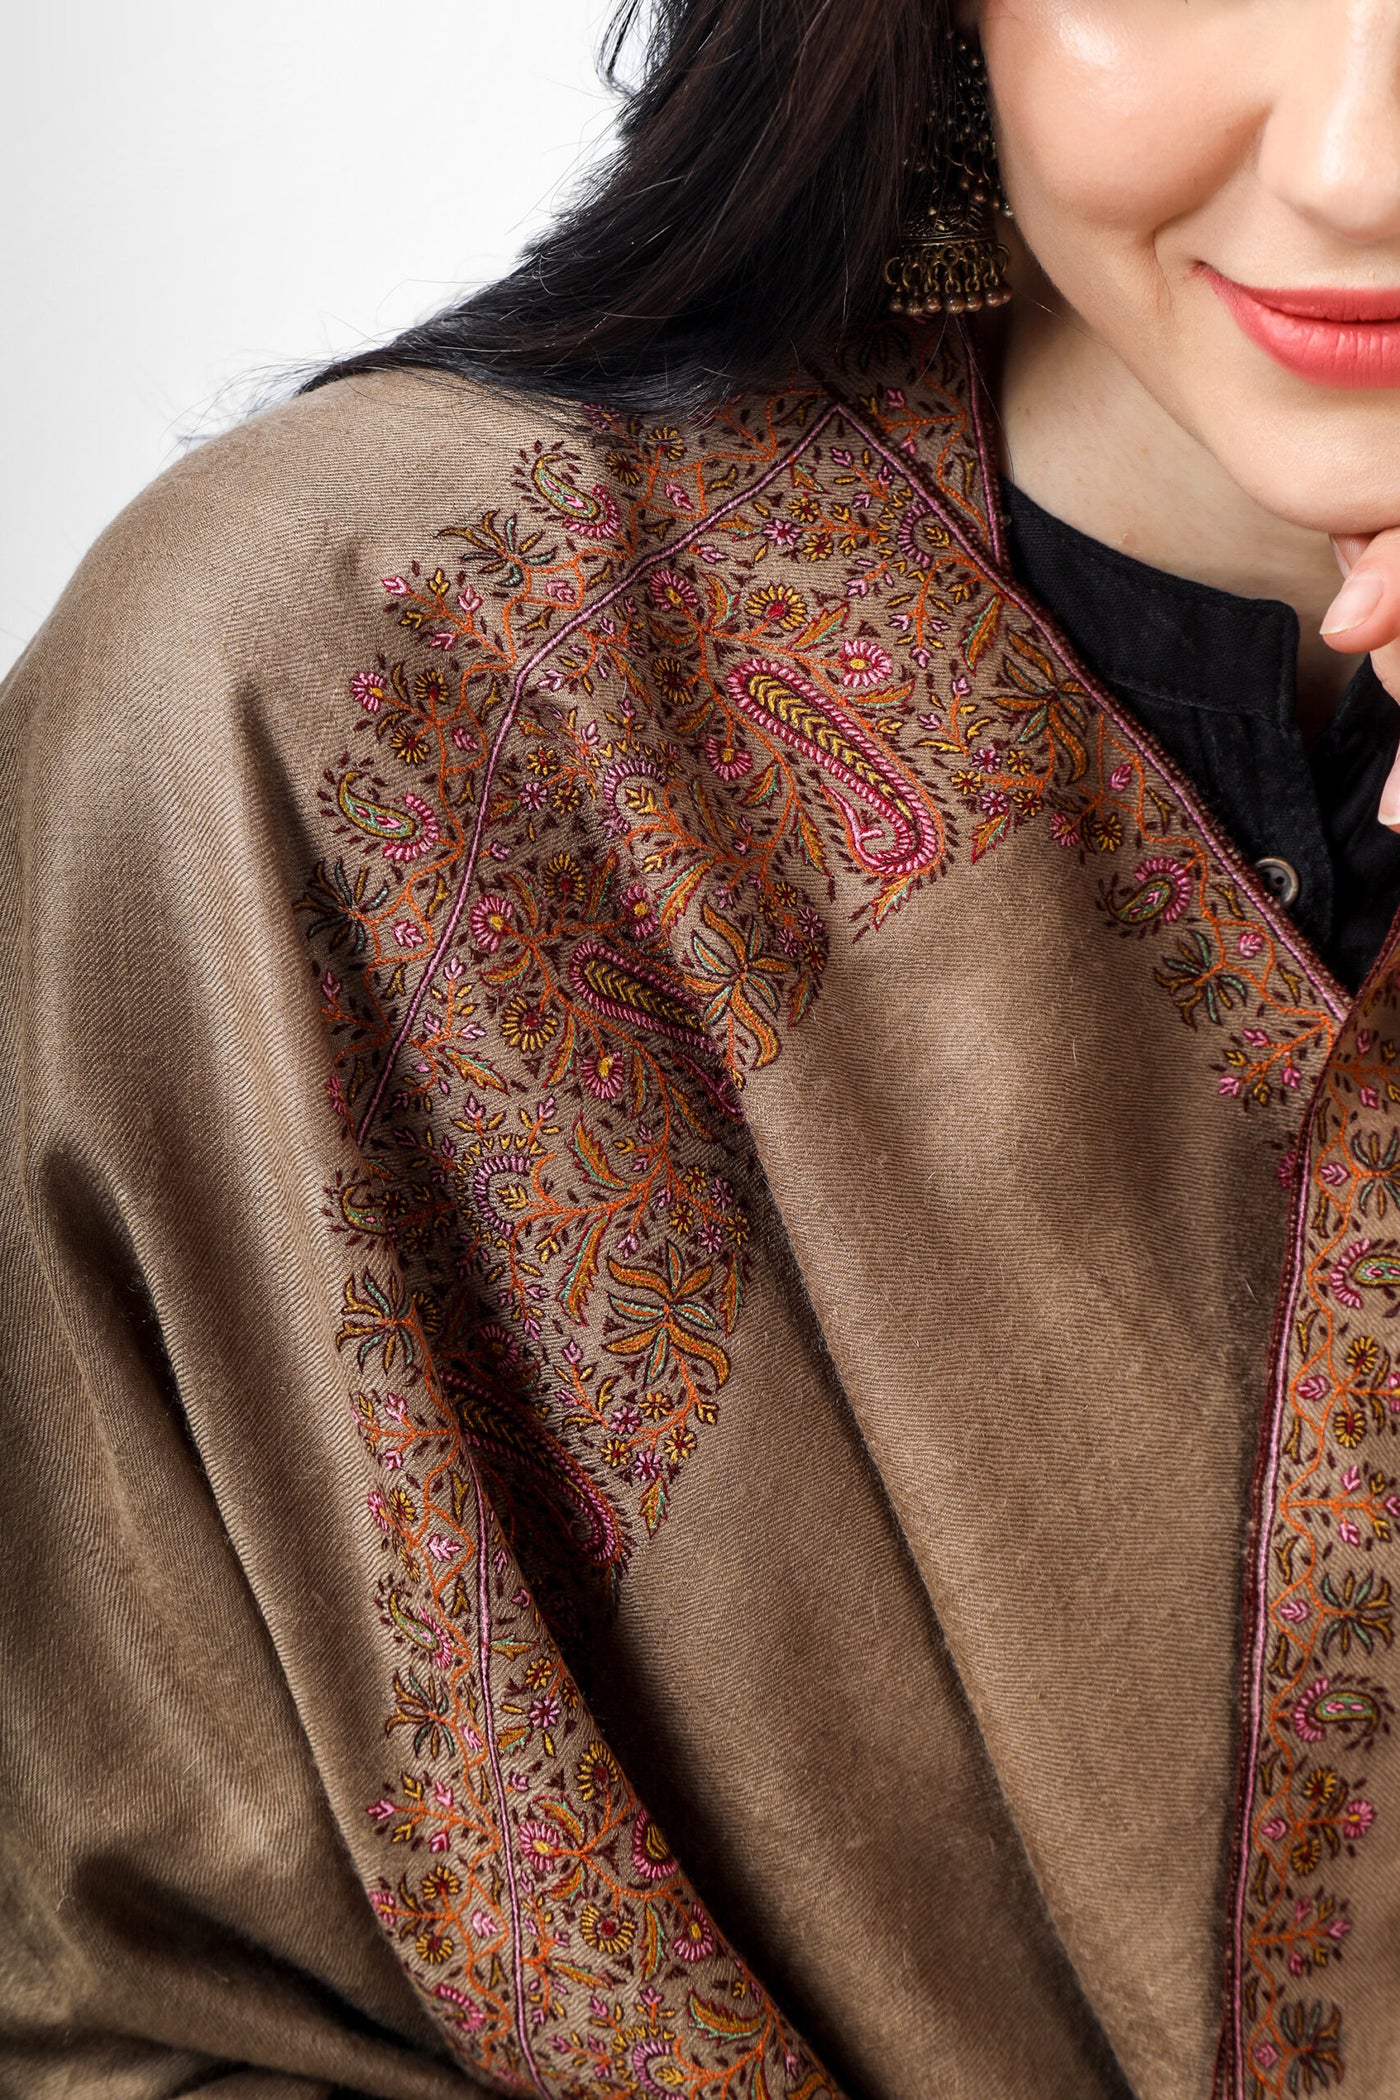 Natural badamkaar Pashmina border sozni shawl